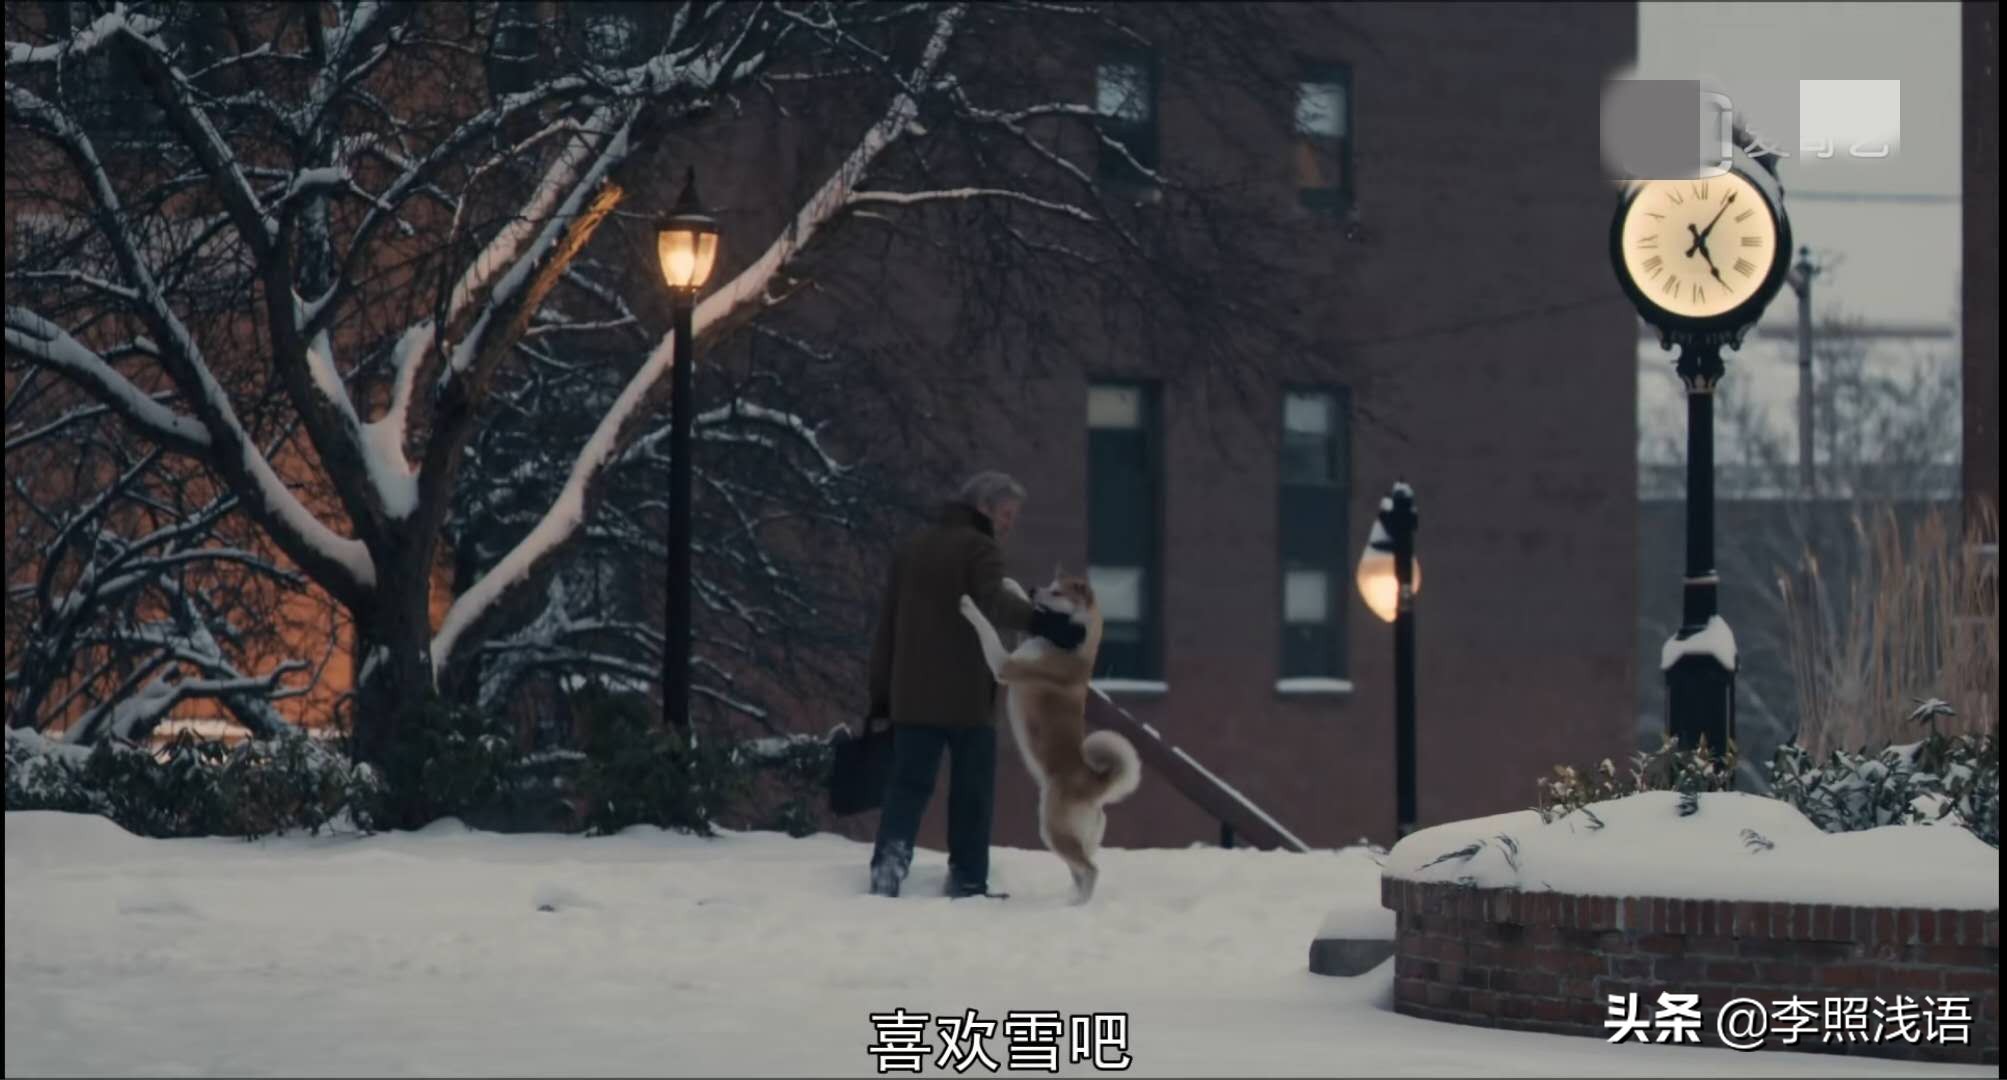 《忠犬八公的故事》：从镜头语言、表现手法、现实意义分析其魅力